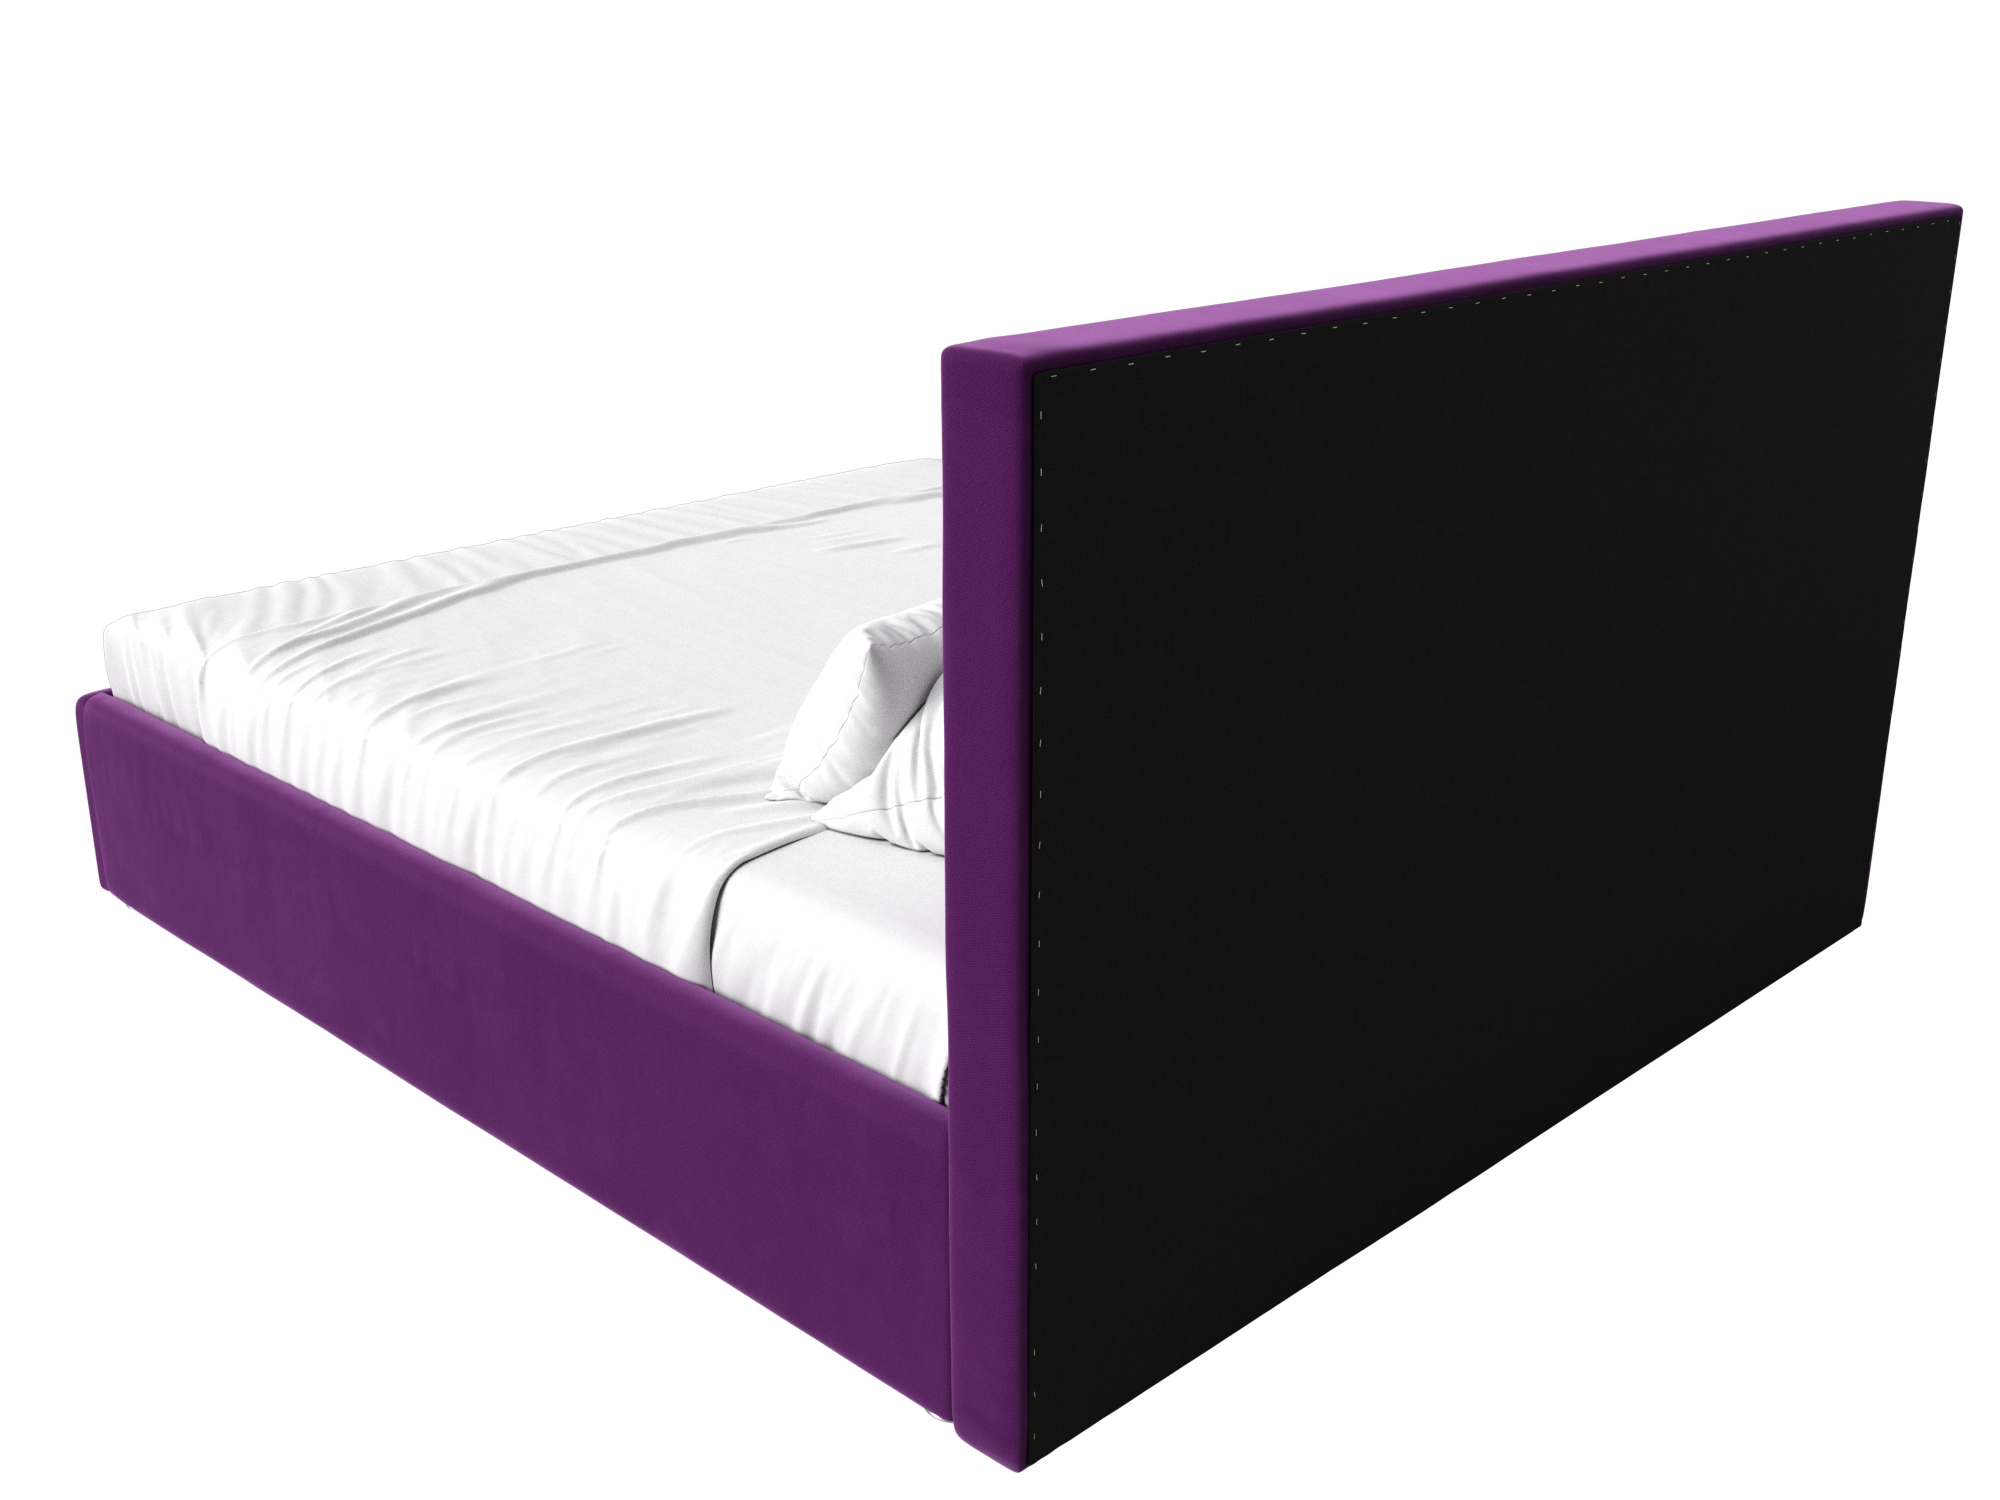 Интерьерная кровать Кариба 160 (Фиолетовый)